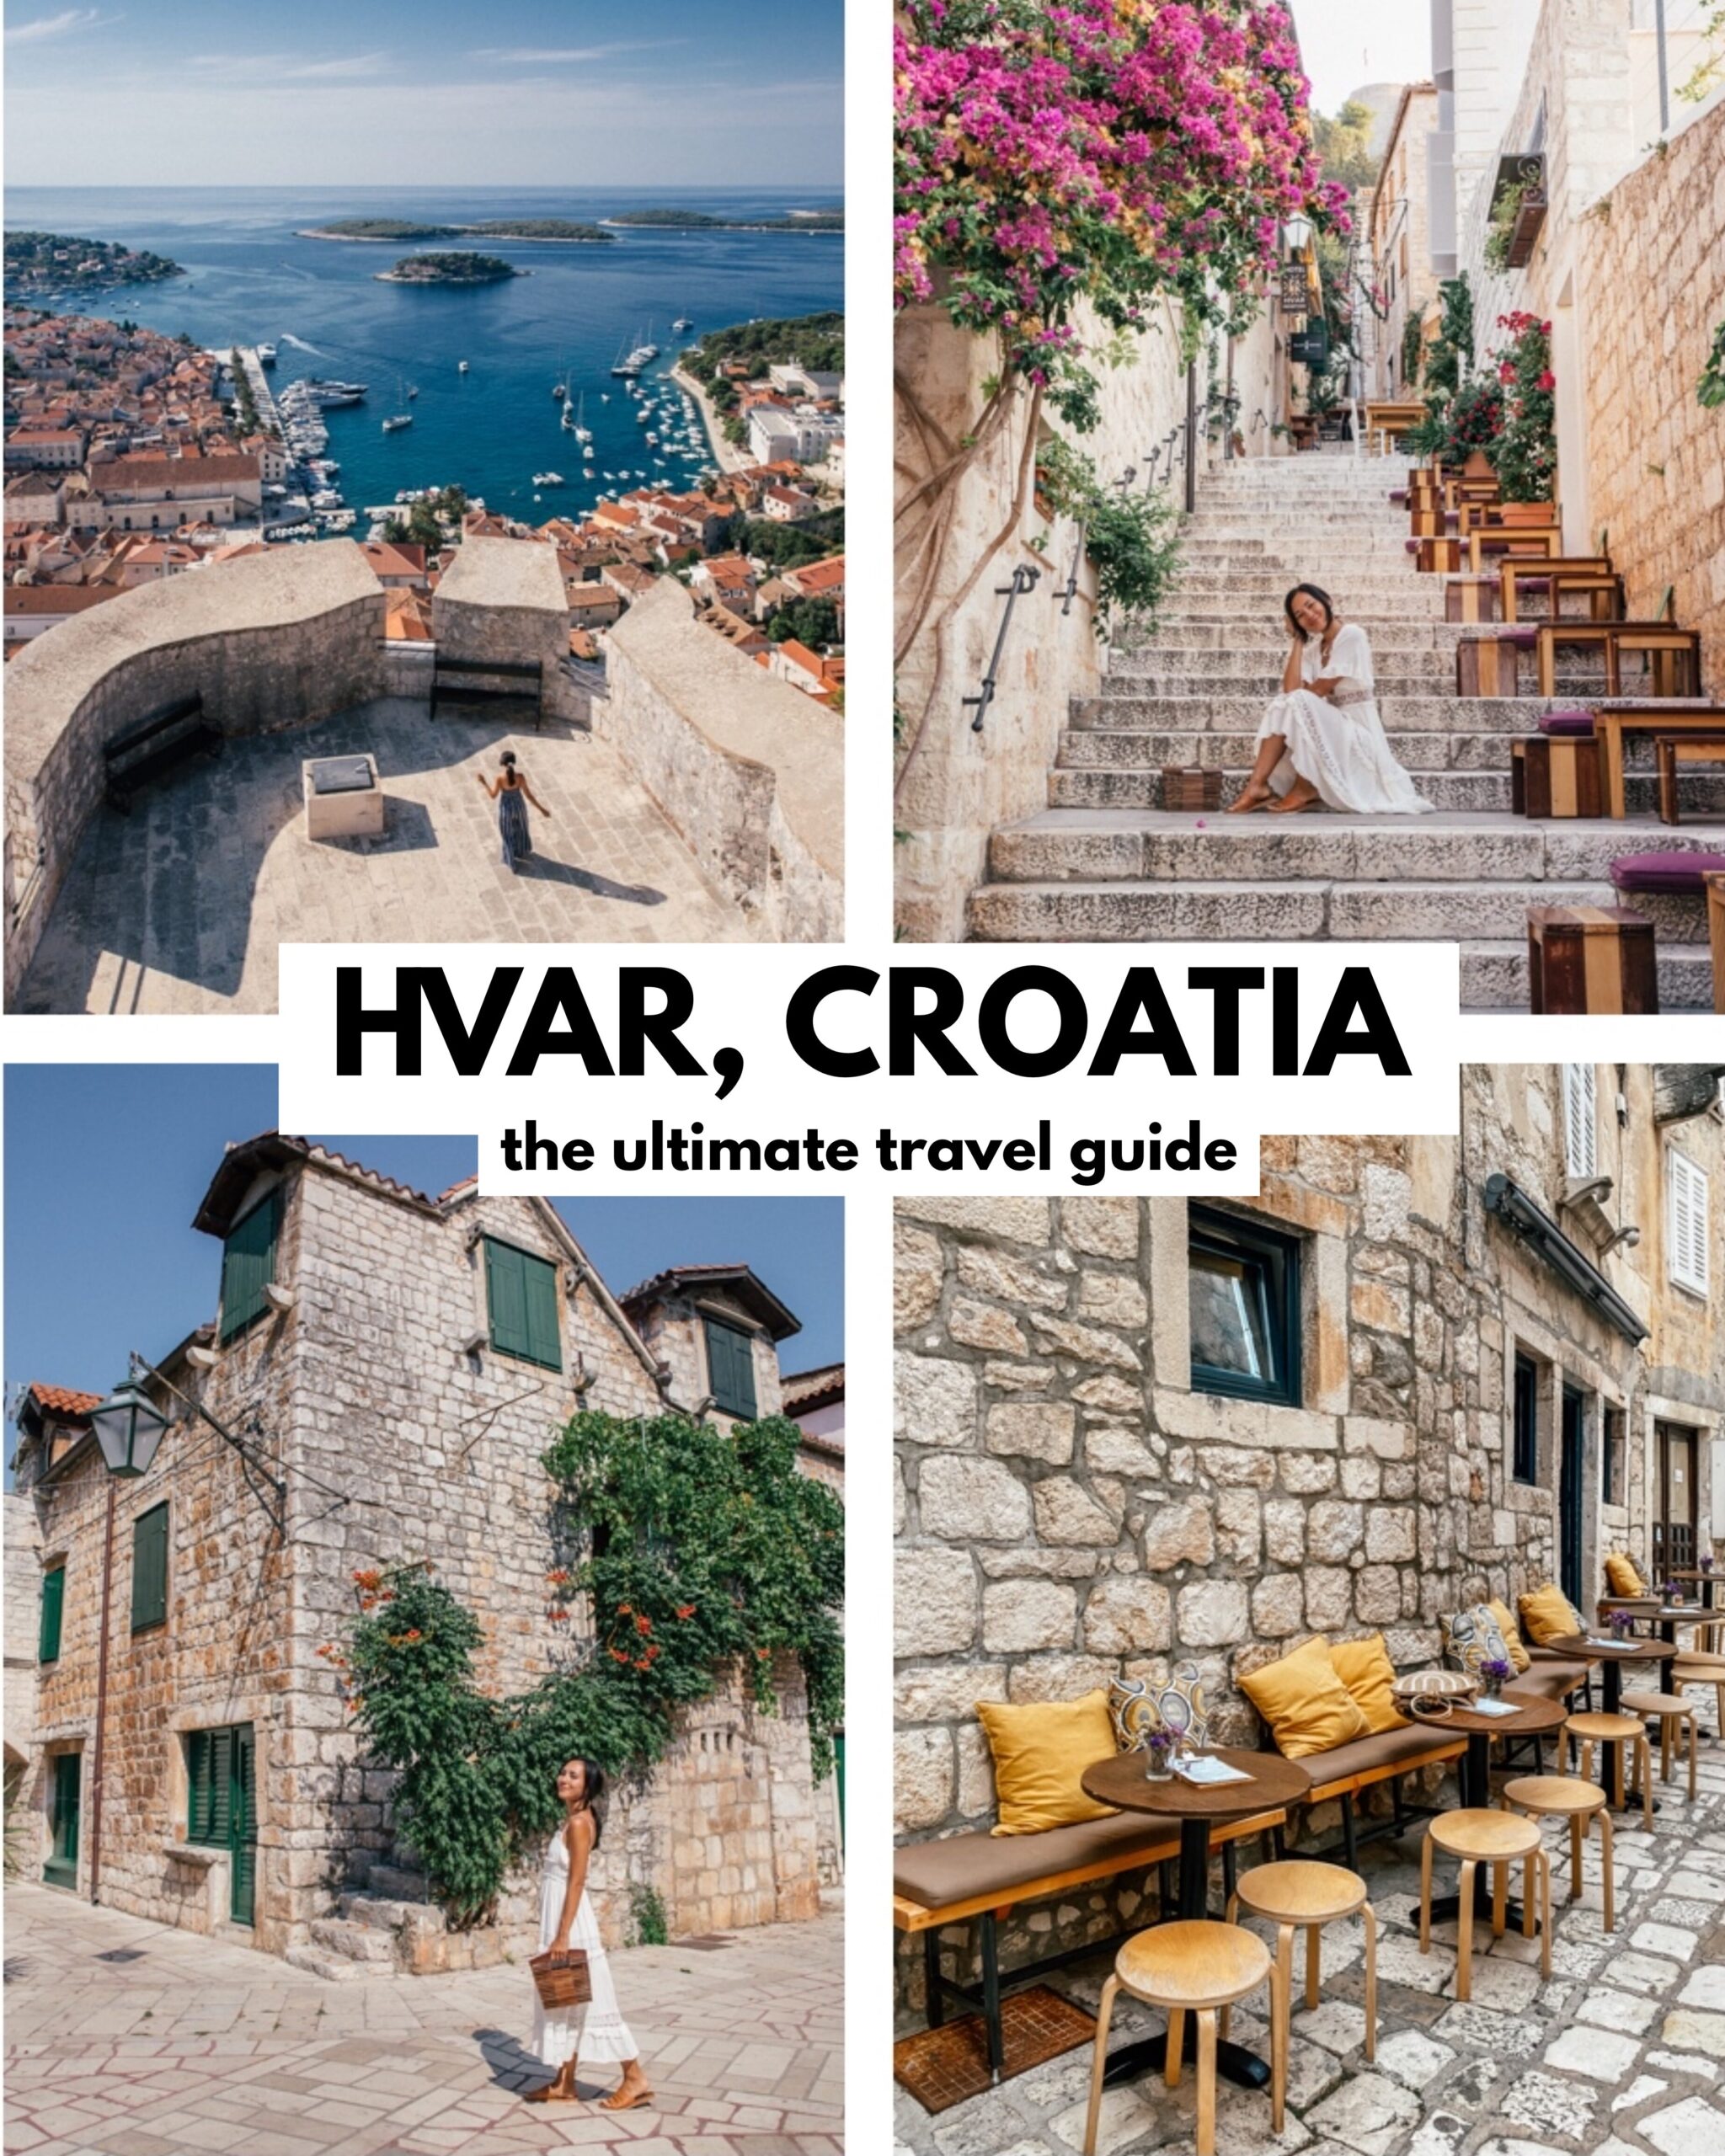 Hvar, Croatia Travel Guide